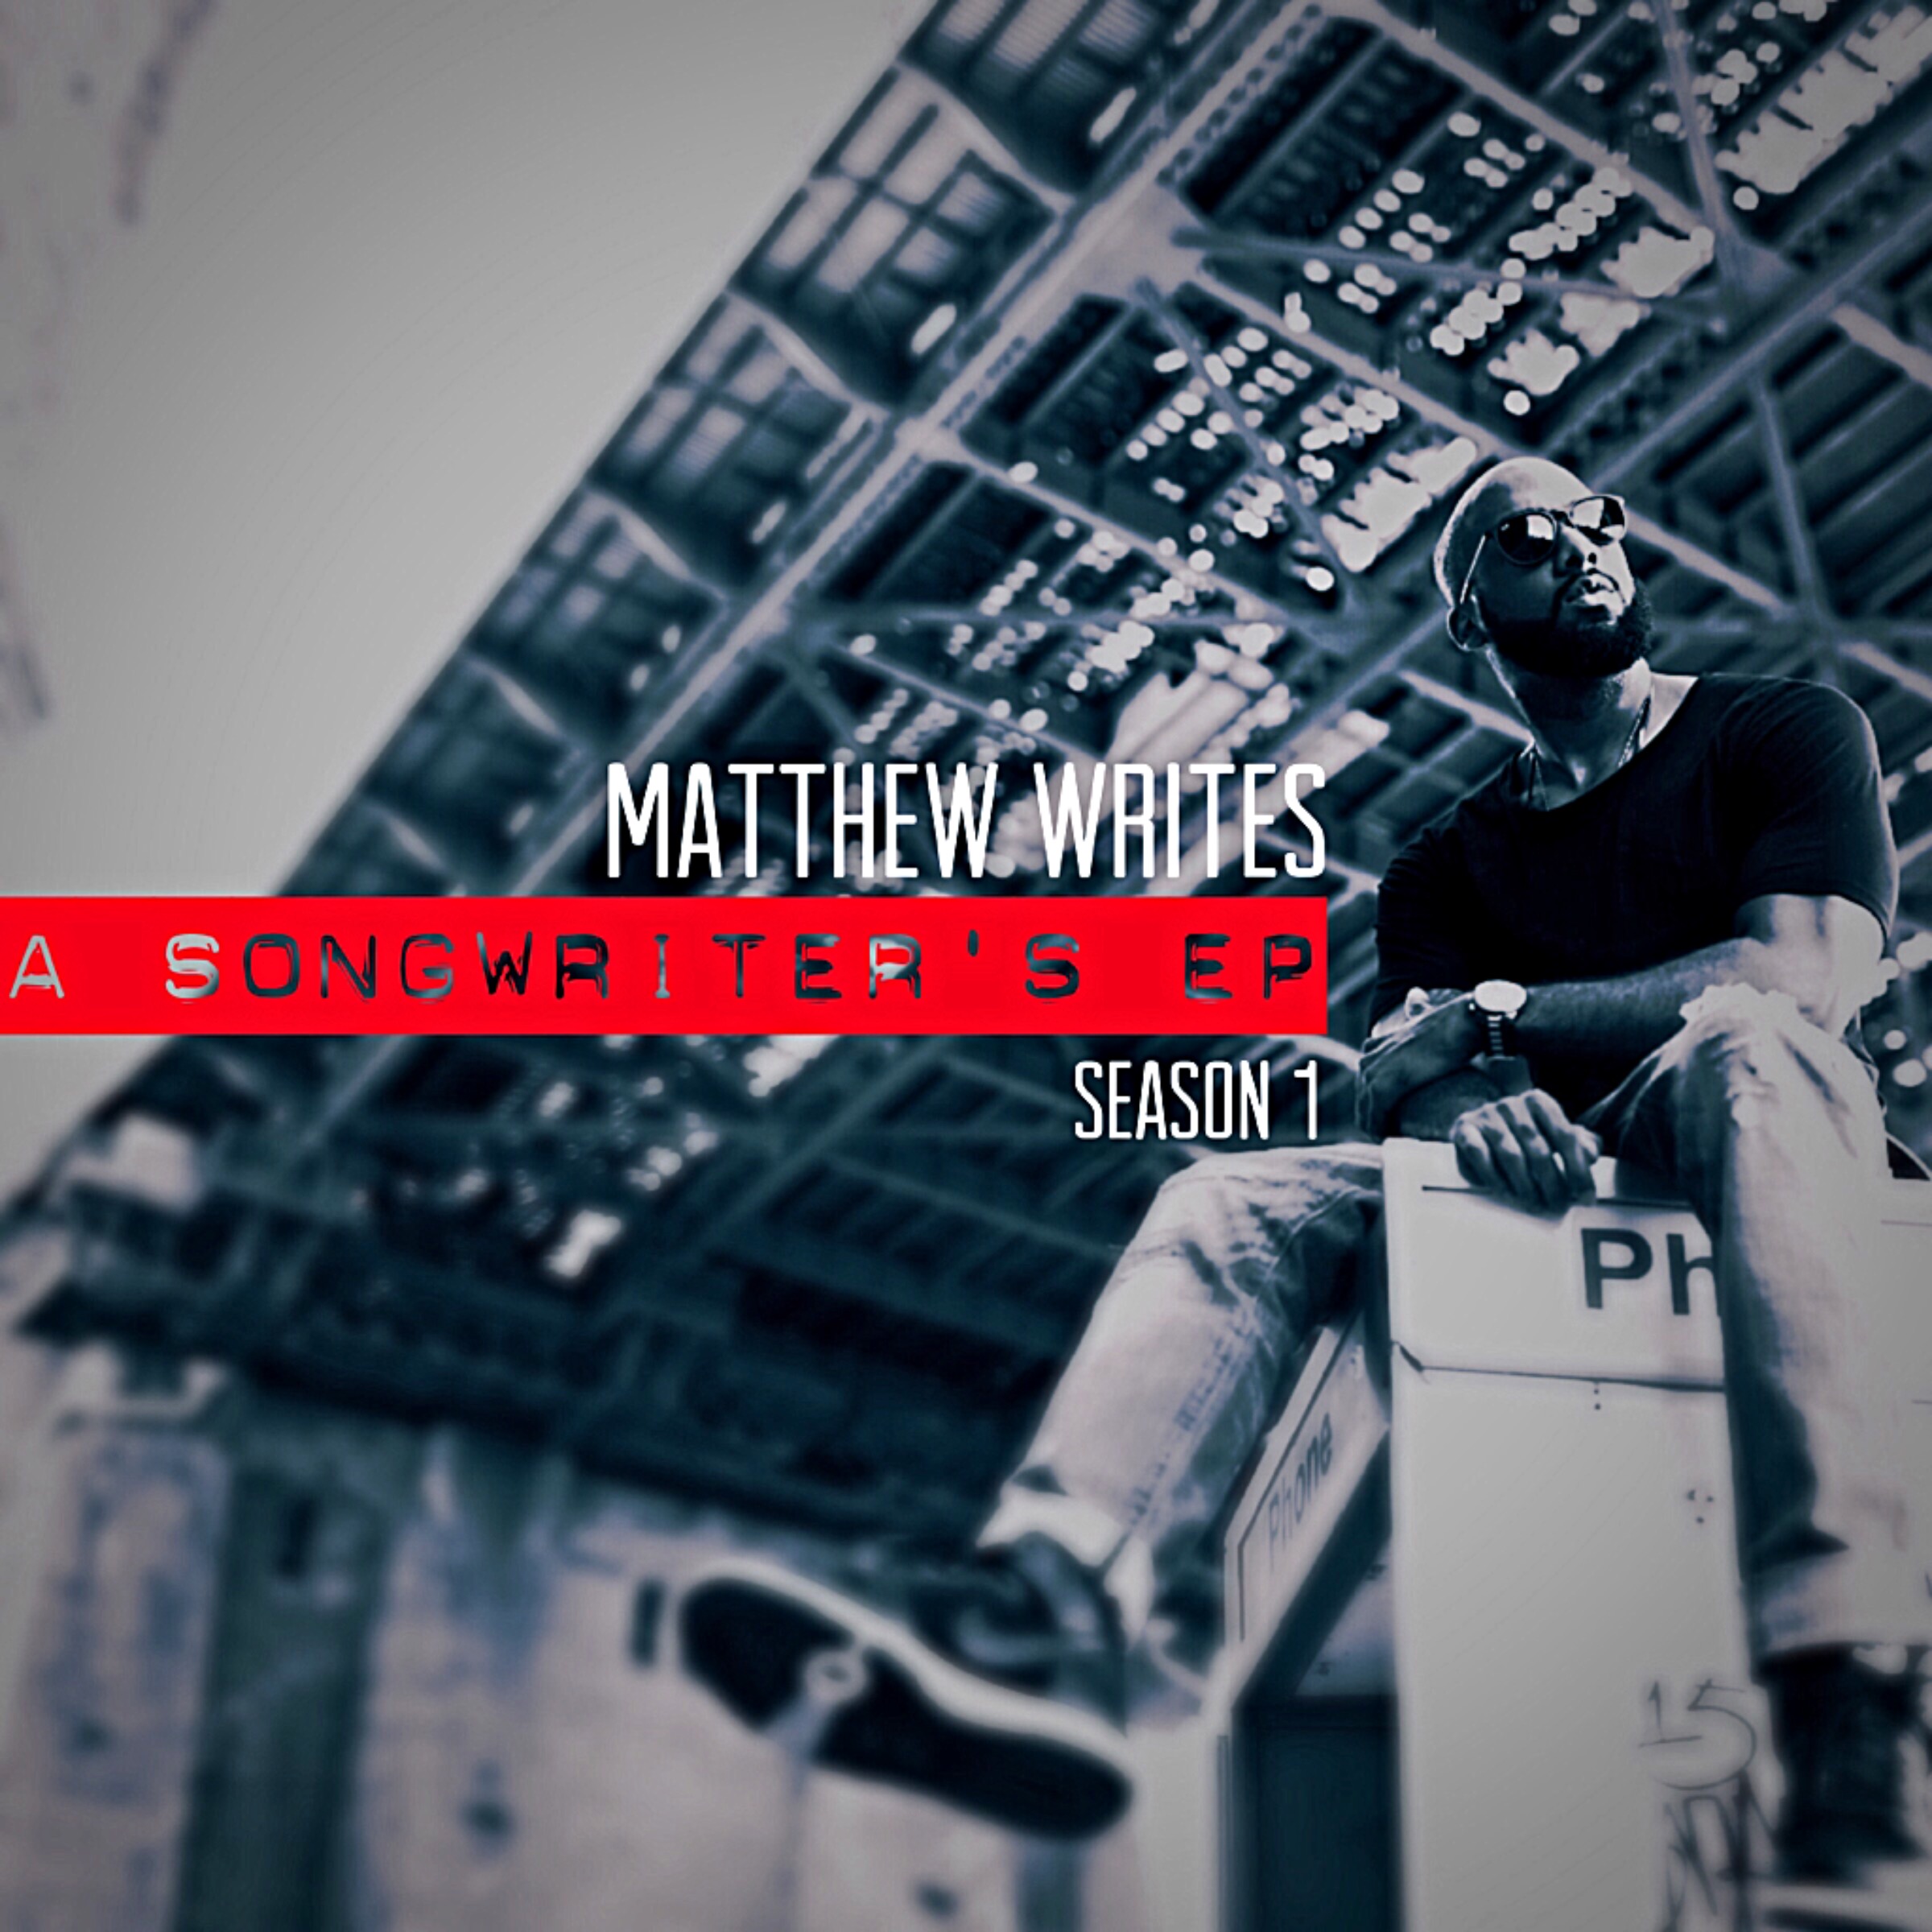 Matthew Writes ‘A Songwriter’s EP’ – Season 1